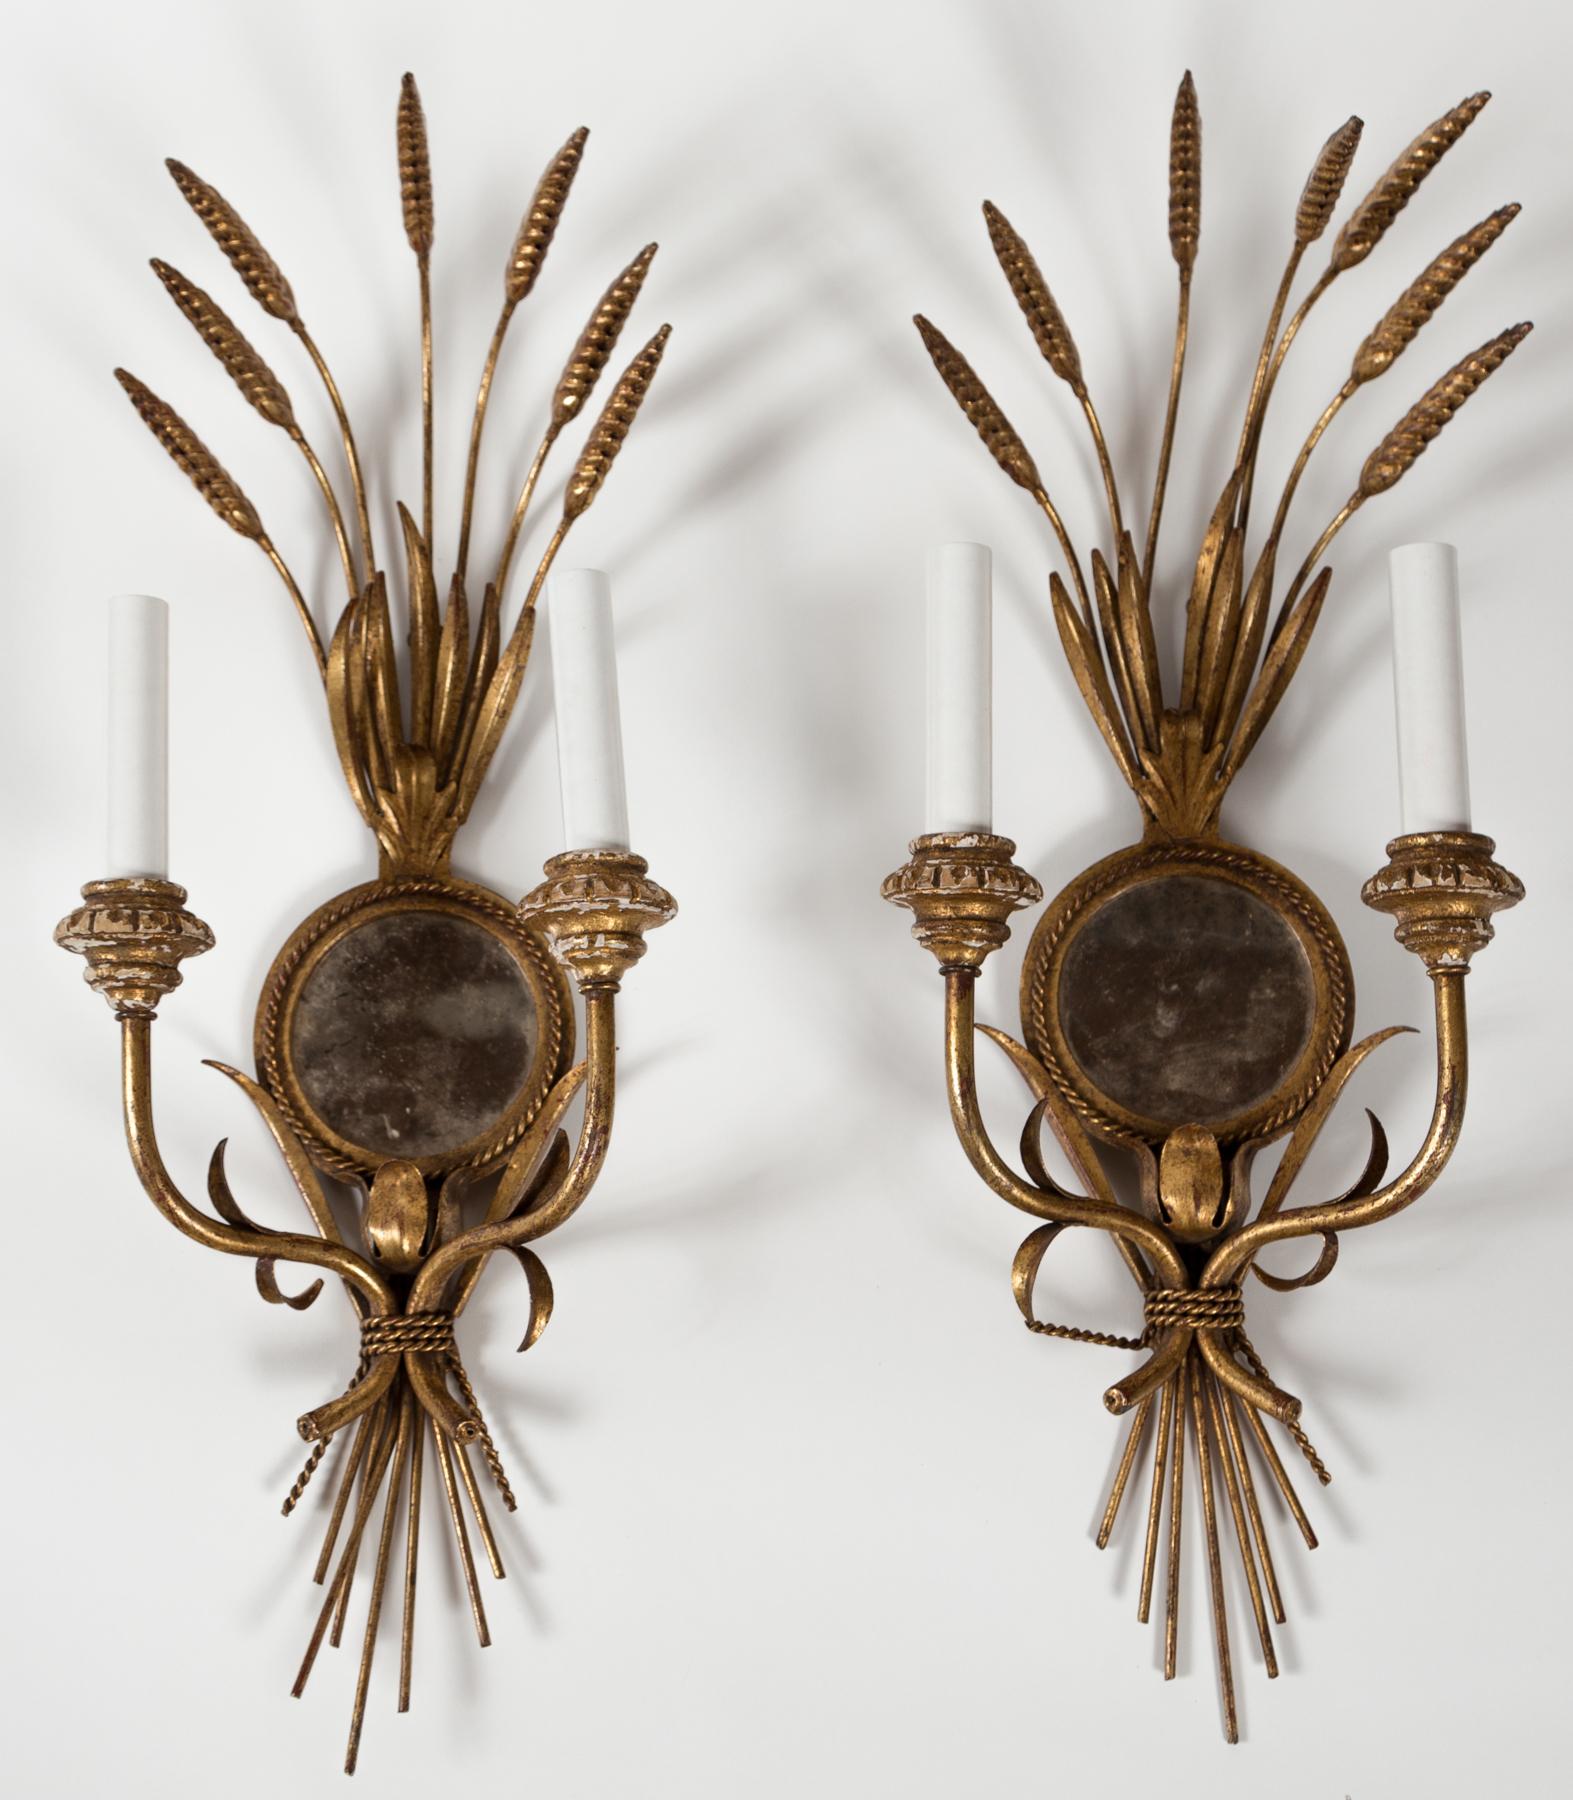 Paar verspiegelte Weizengarben-Konsolen, Italien, um 1950. Vergoldetes Metall mit Details aus vergoldetem Holz und Spiegeln aus antikem Glas. Doppelte Arme mit neuen Ärmeln.